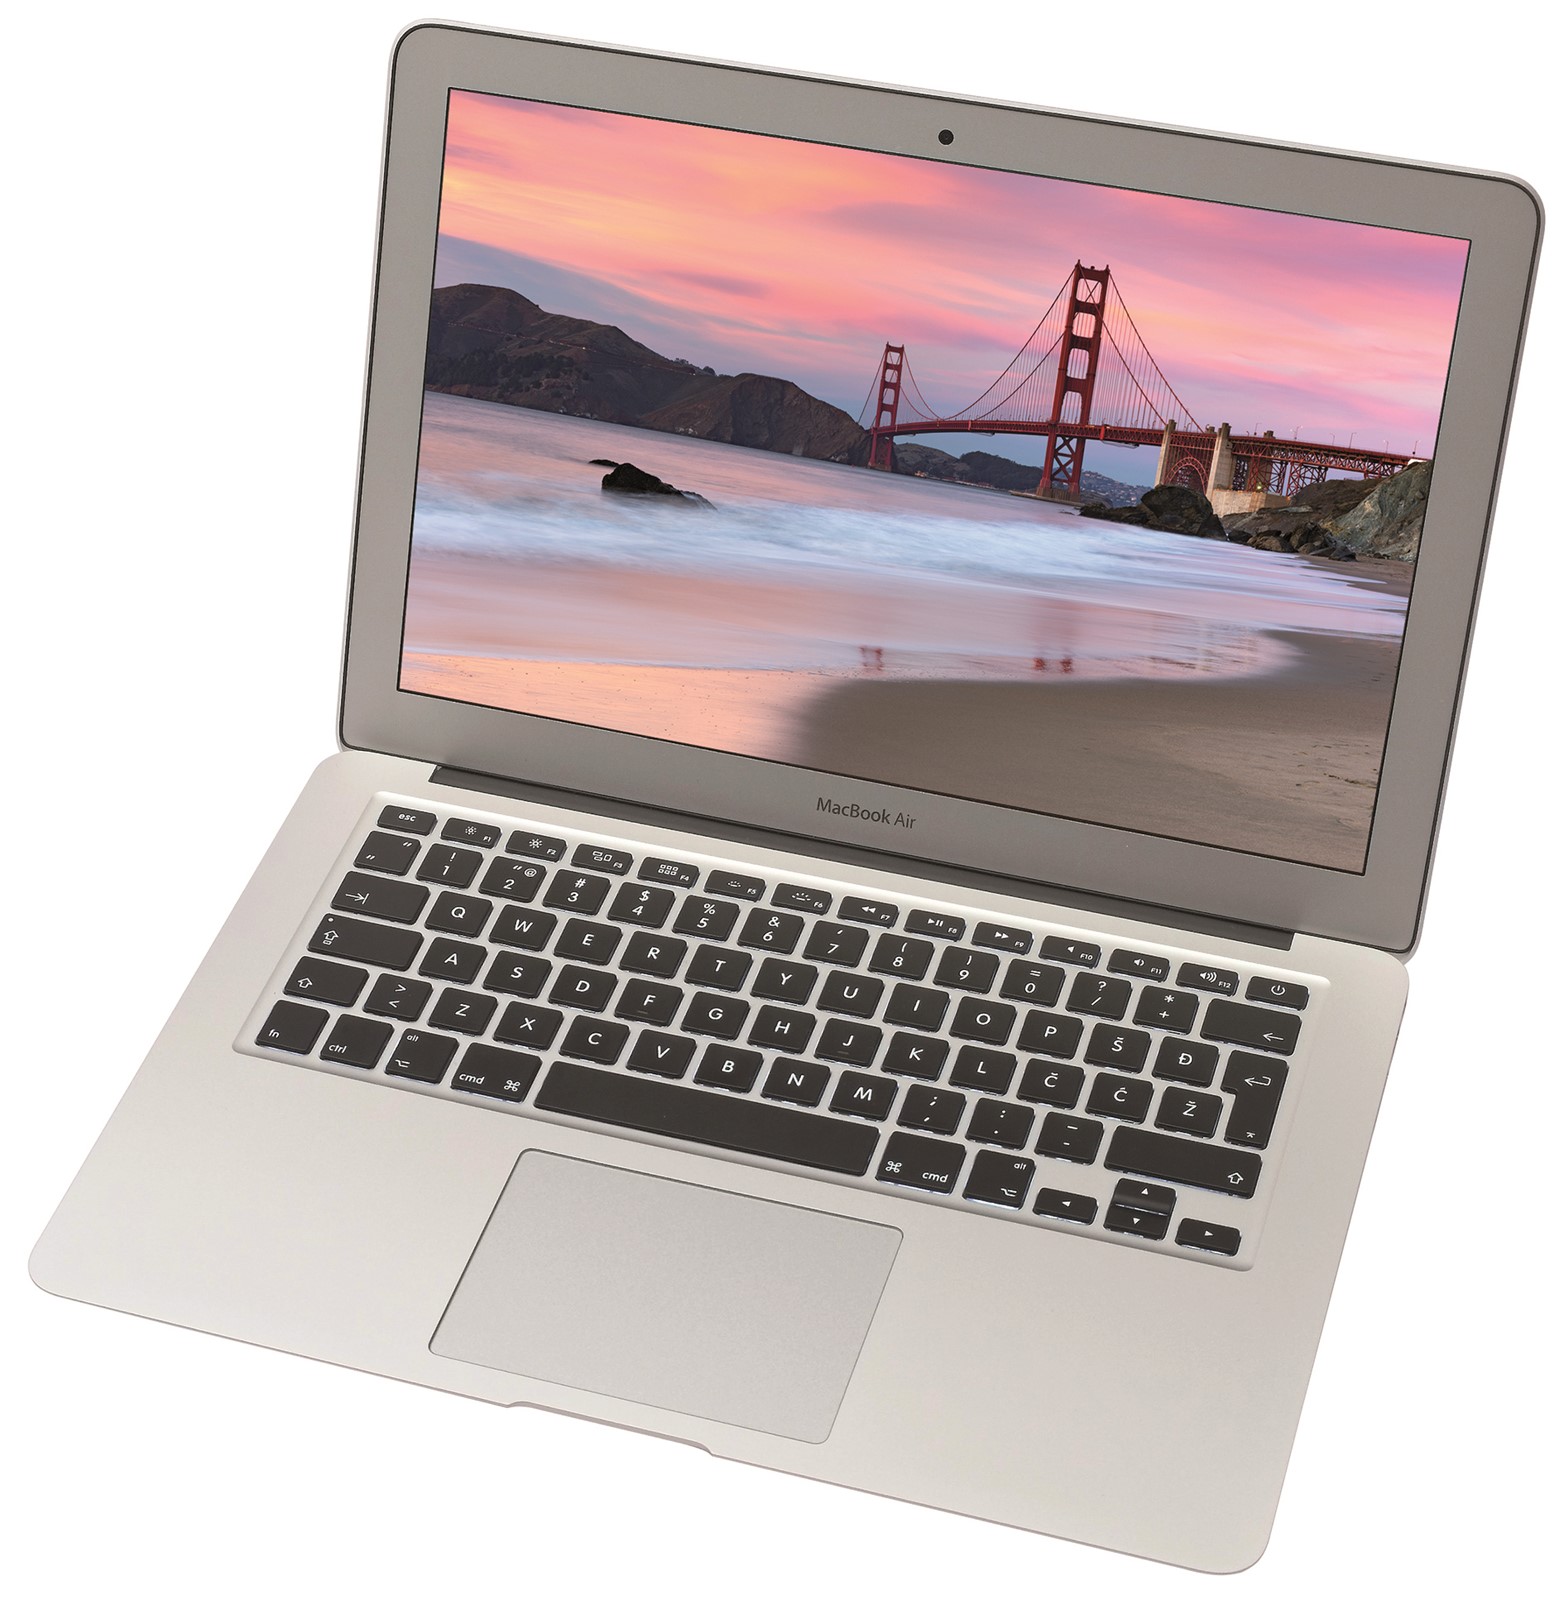 Apple MacBook Air 13 (2018) - Prauzor svih ultrabook računala danas je  jeftiniji nego ikada - Recenzije @ Bug.hr